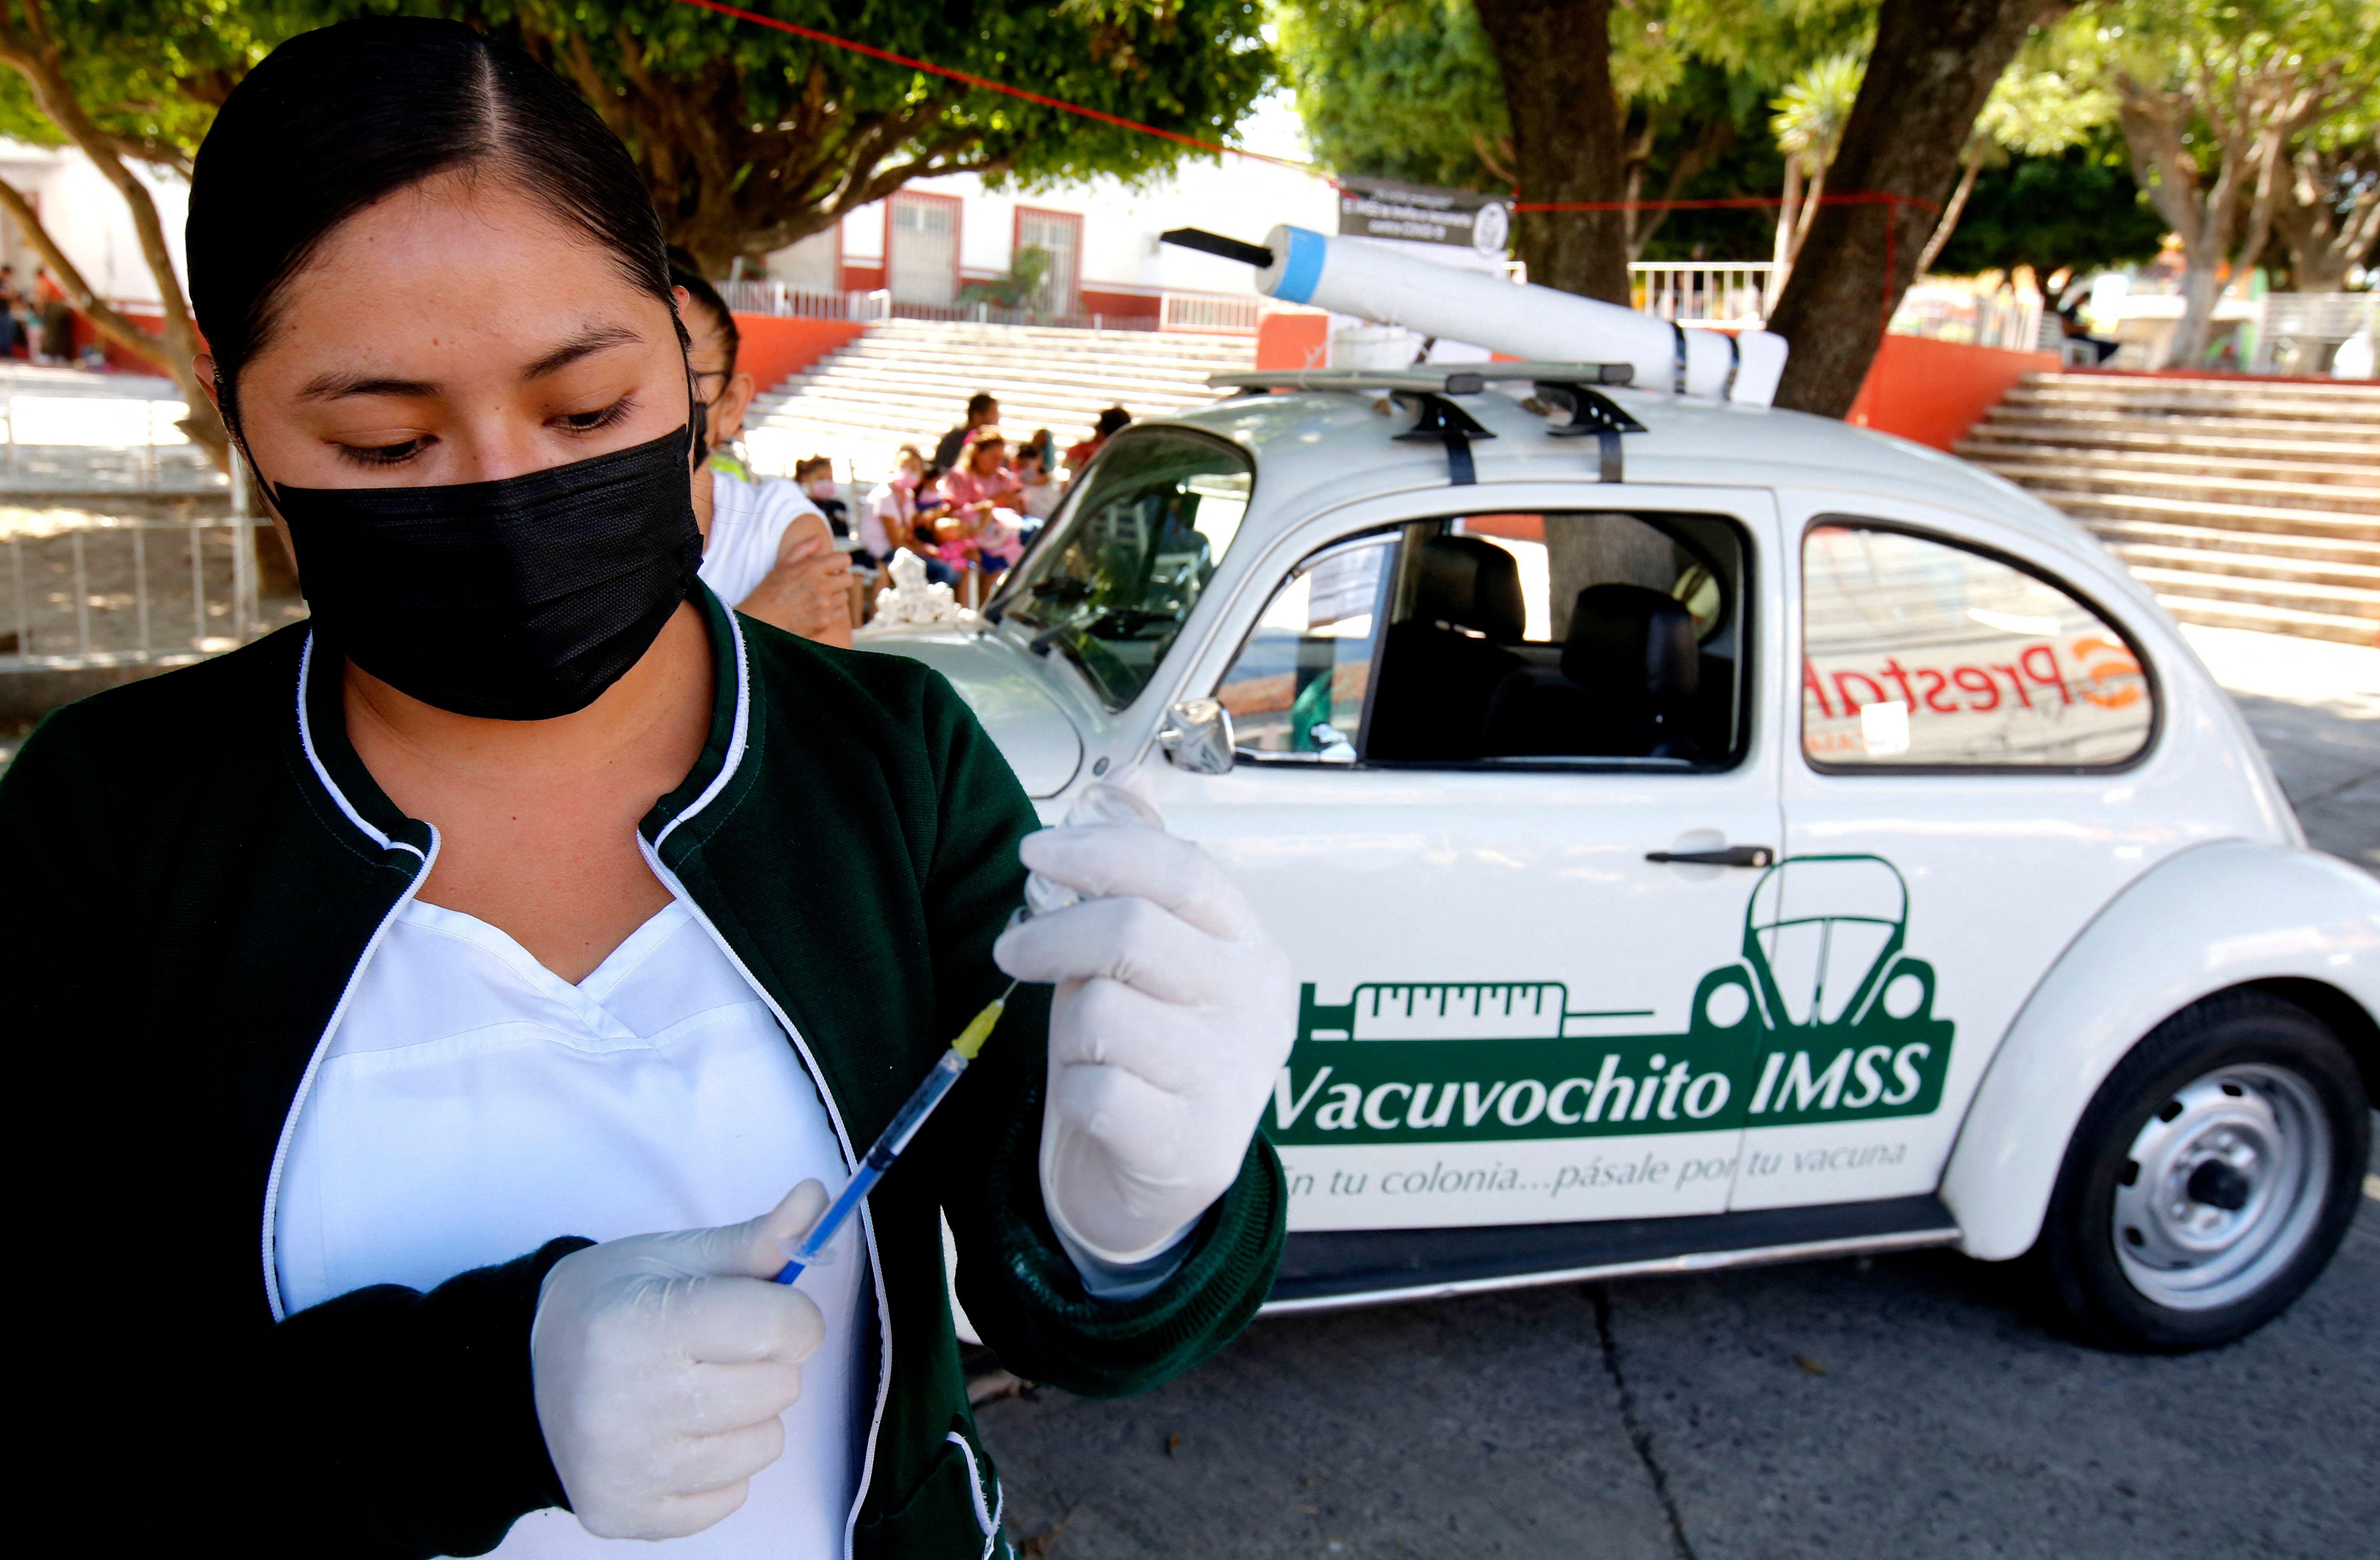 멕시코의 간호사가 아스트라제네카의 코로나19 백신 접종을 준비하는 모습